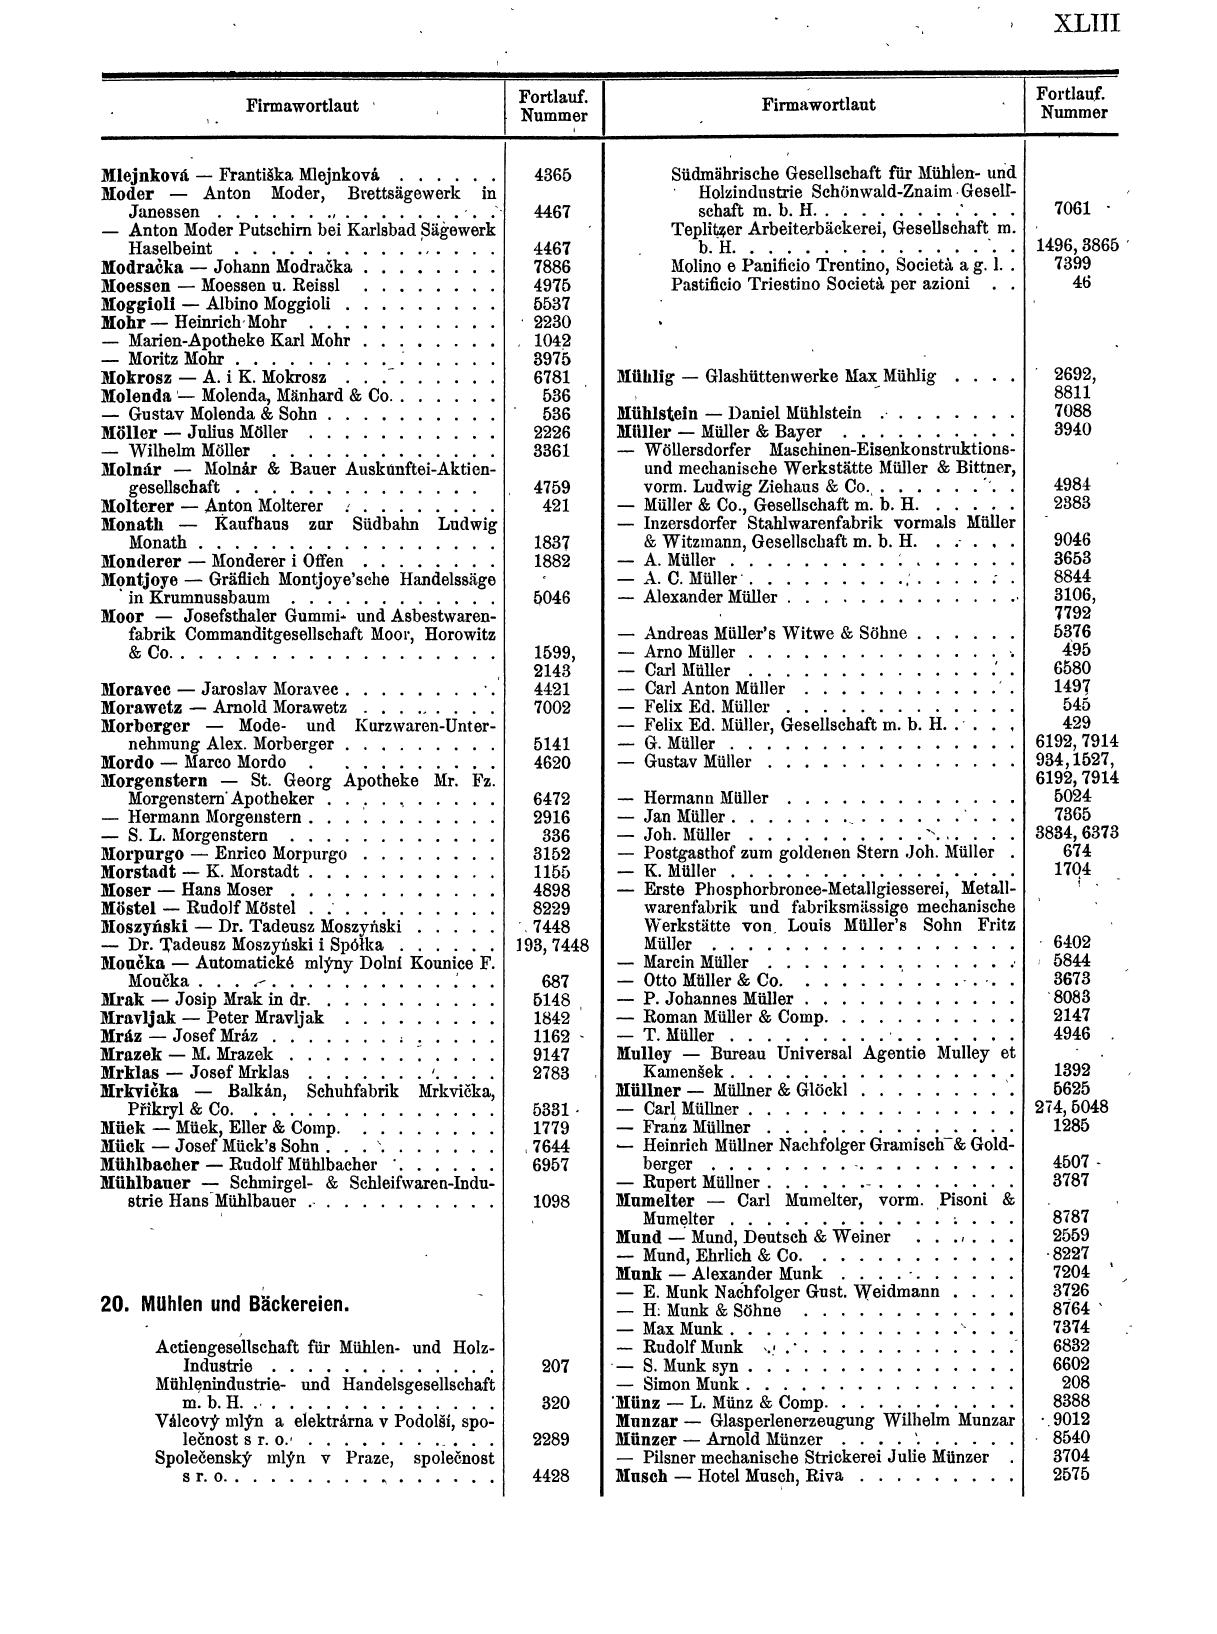 Zentralblatt für die Eintragungen in das Handelsregister 1913, Teil 1 - Seite 51